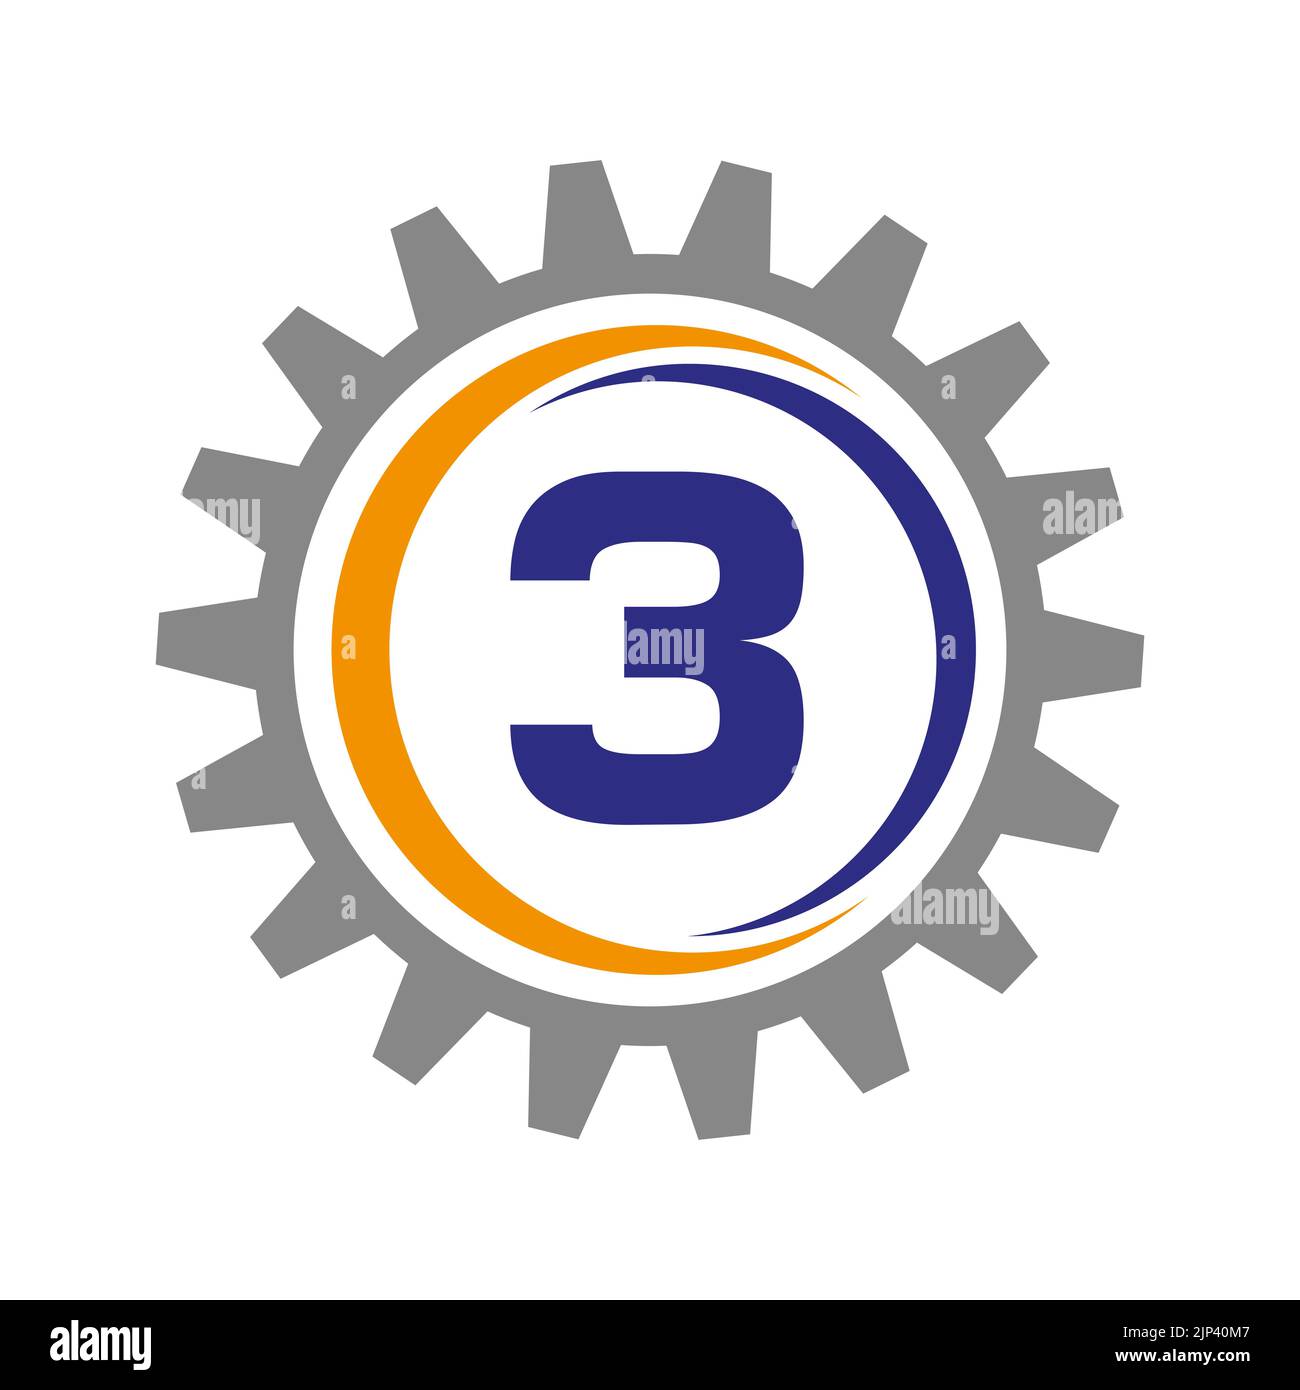 Design-Vorlage Für Das „Letter 3 Gear Logo“. Logo für Automobilausrüstung für die geschäftliche und industrielle Identität Stock Vektor